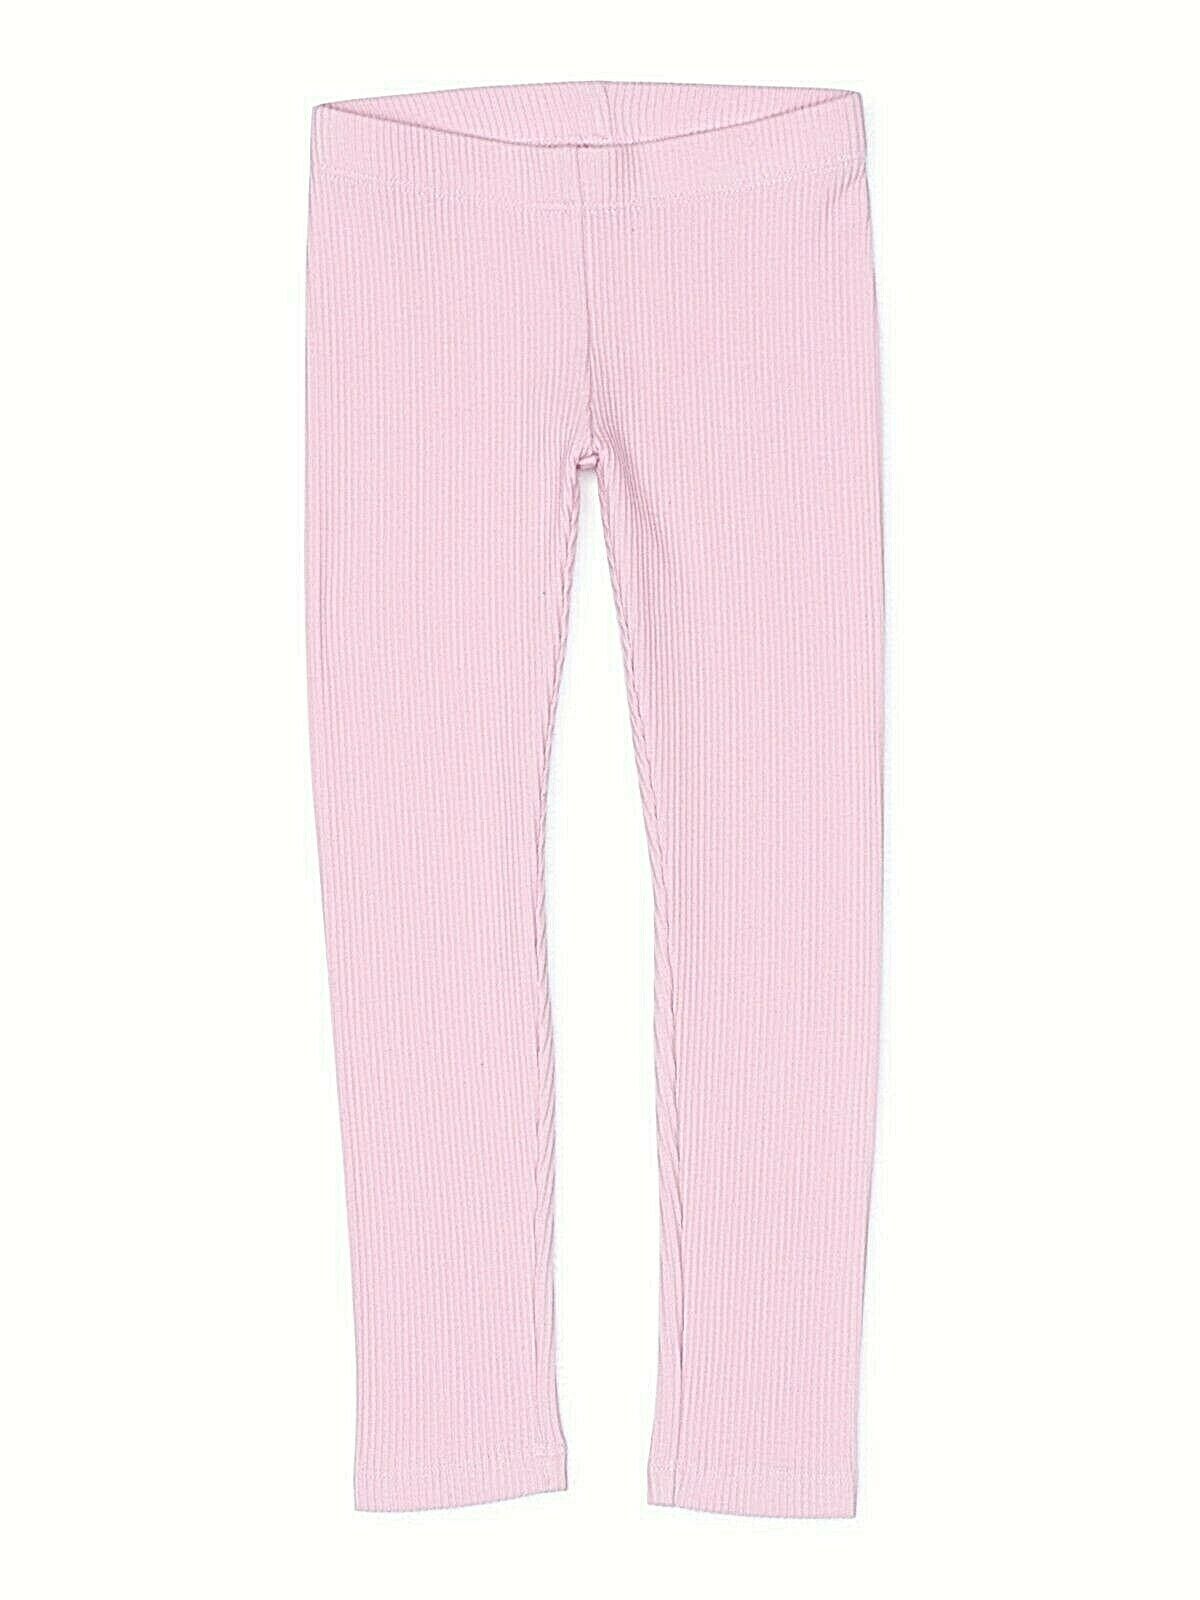 Wonder Nation Girls Tough Cotton Capri Leggings Size MEDIUM (7-8) Ribbed Pink